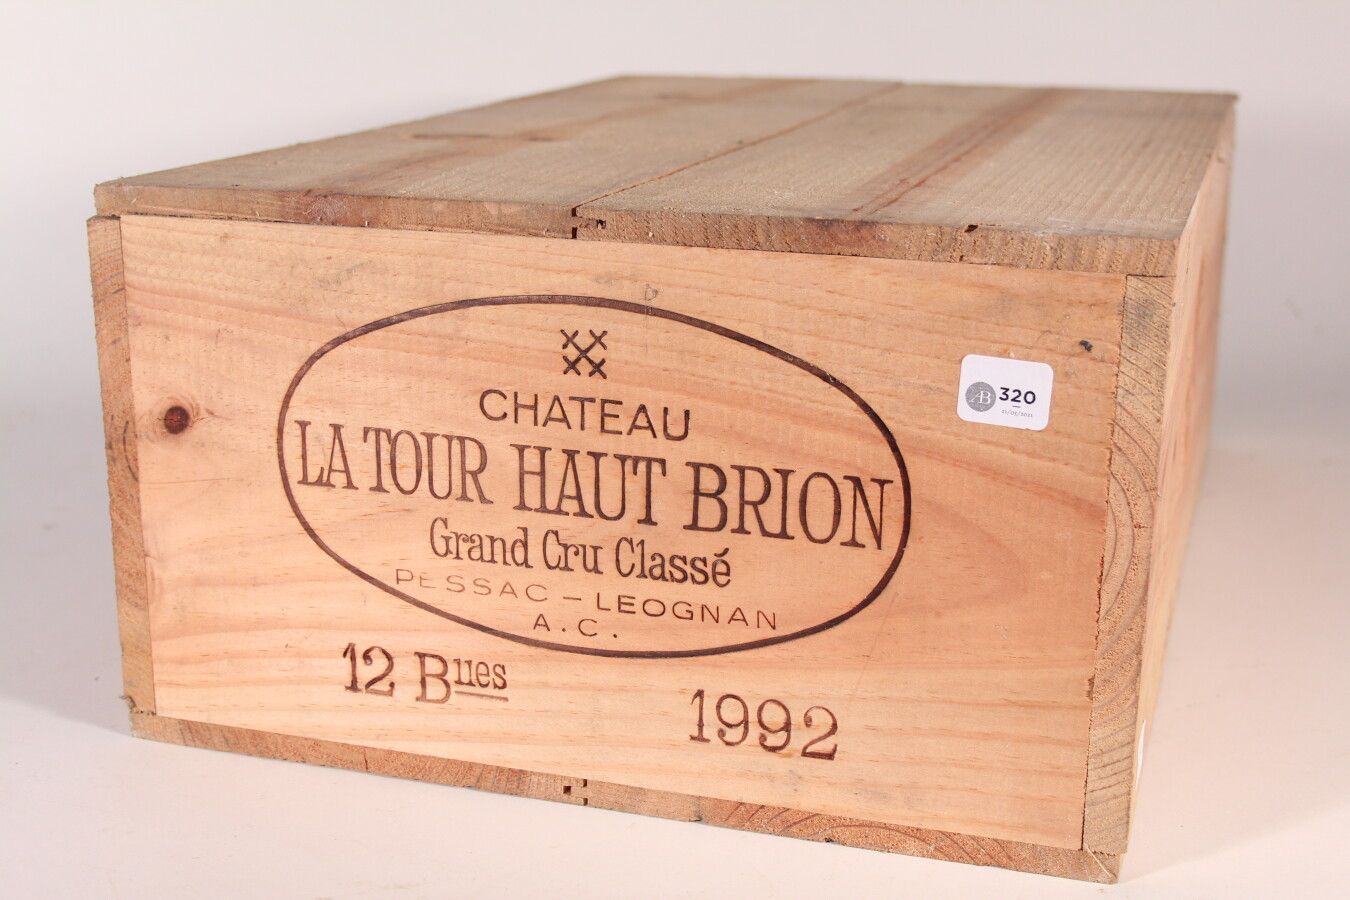 Null 1992 - Château La Tour Haut Brion

Pessac-Léognan - 12 blles